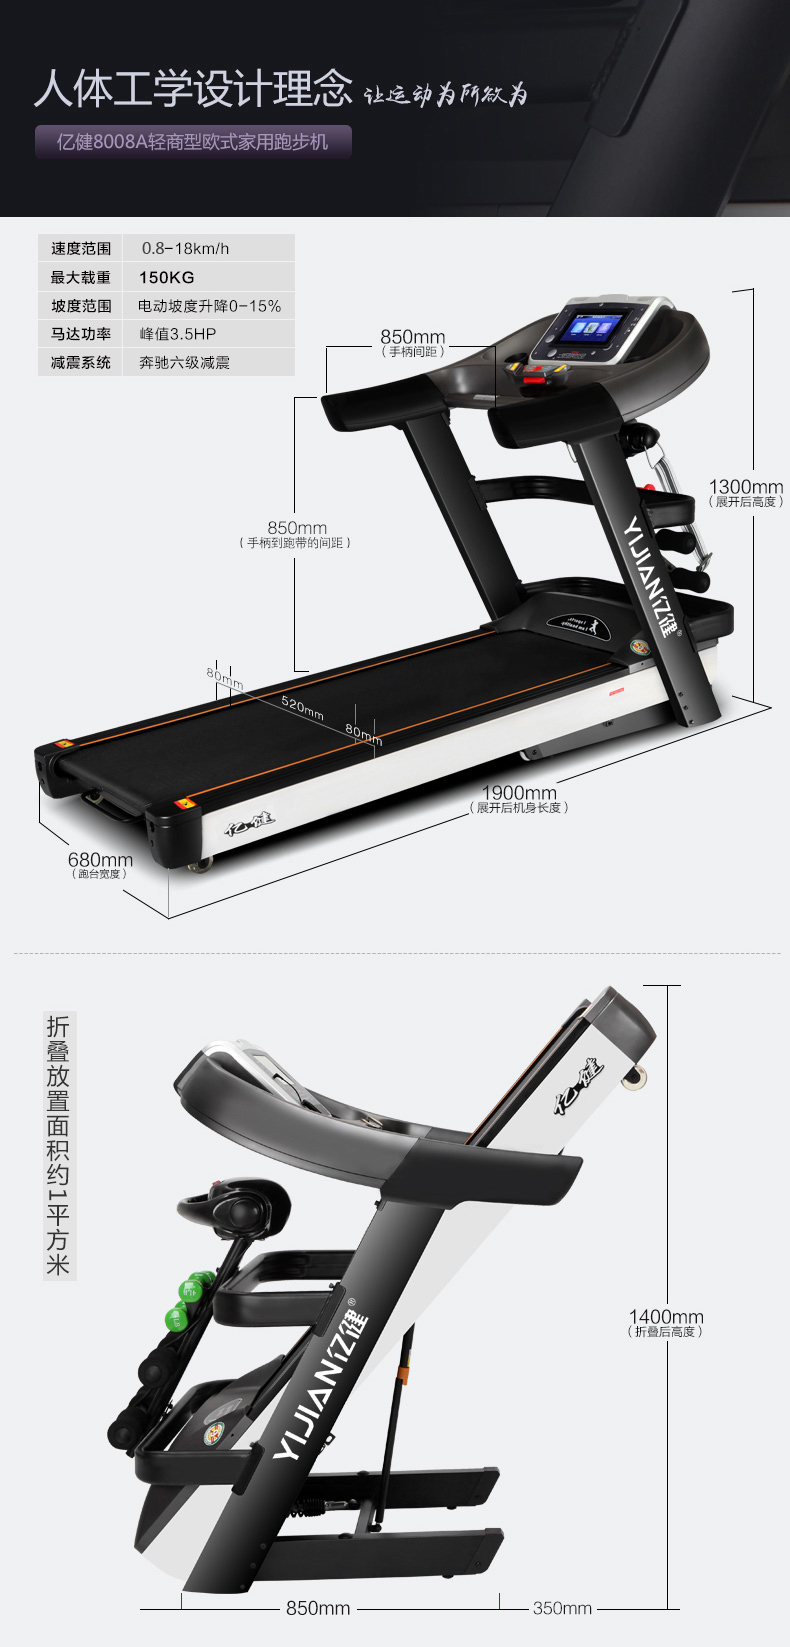 Yijian 8008a treadmill home color WiFi